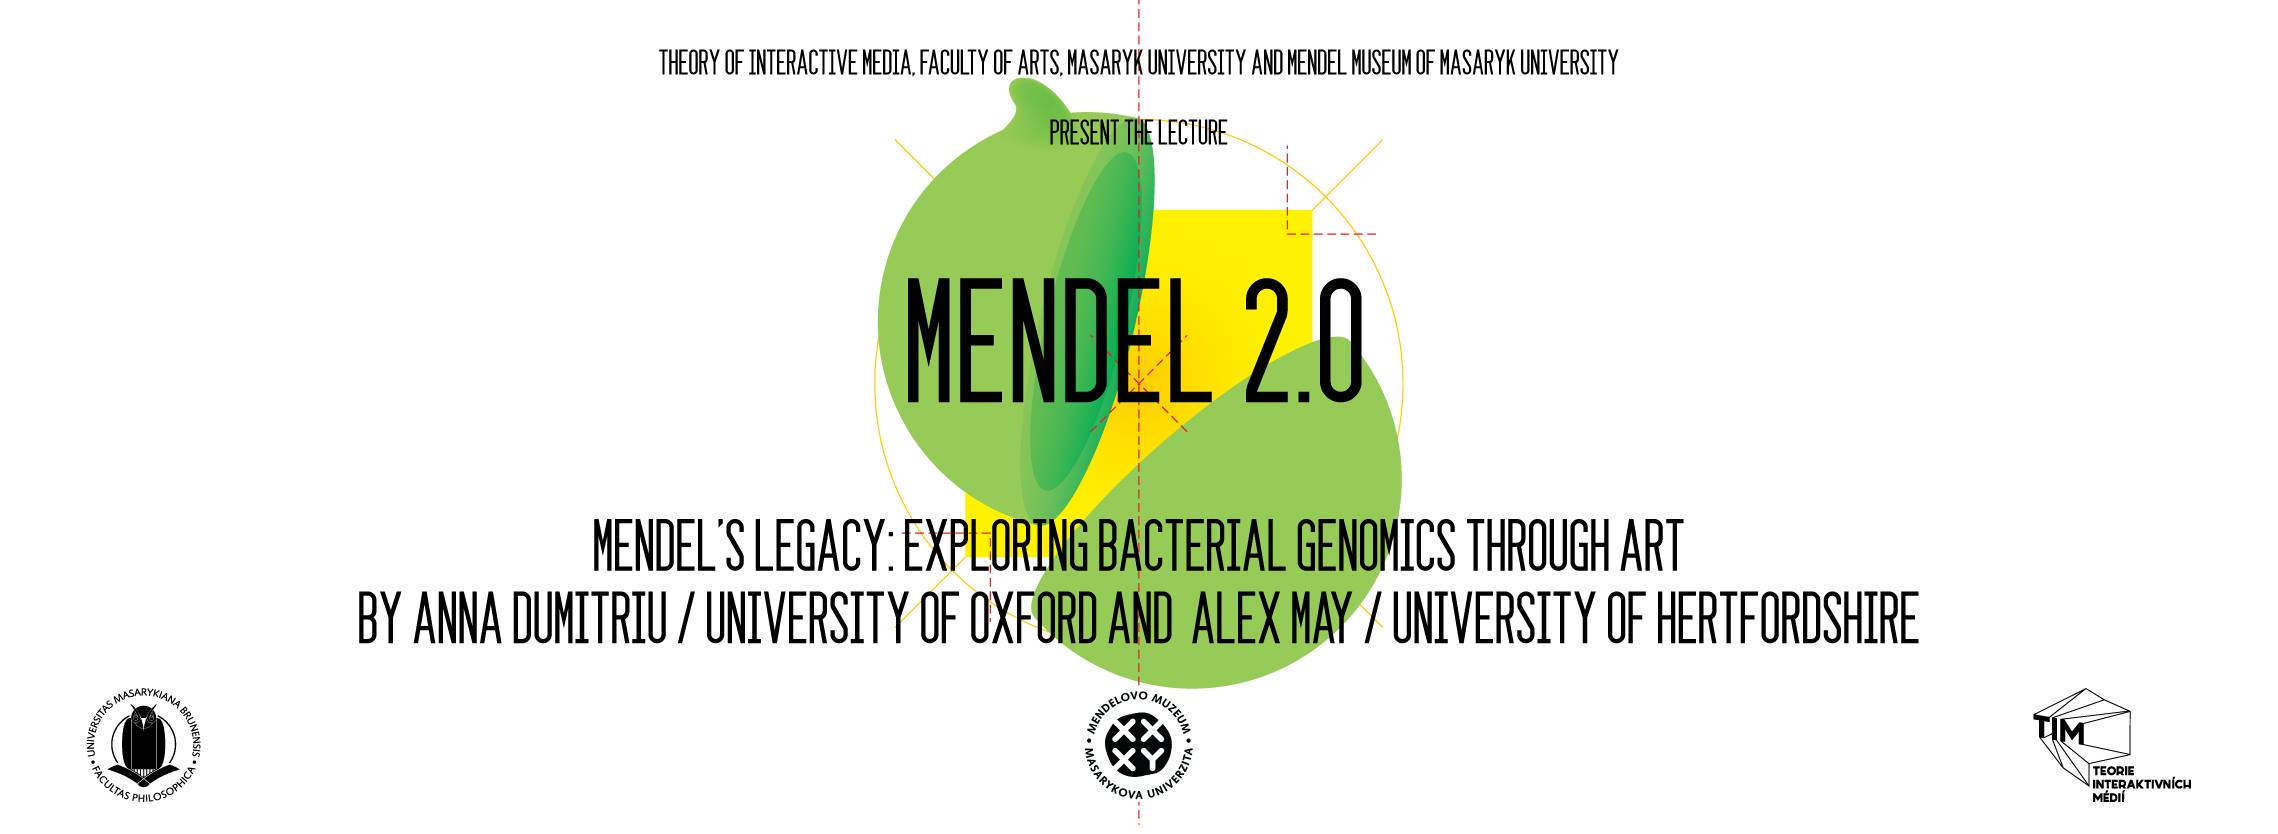 Mendel’s Legacy: Exploring Bacterial Genomics through Art